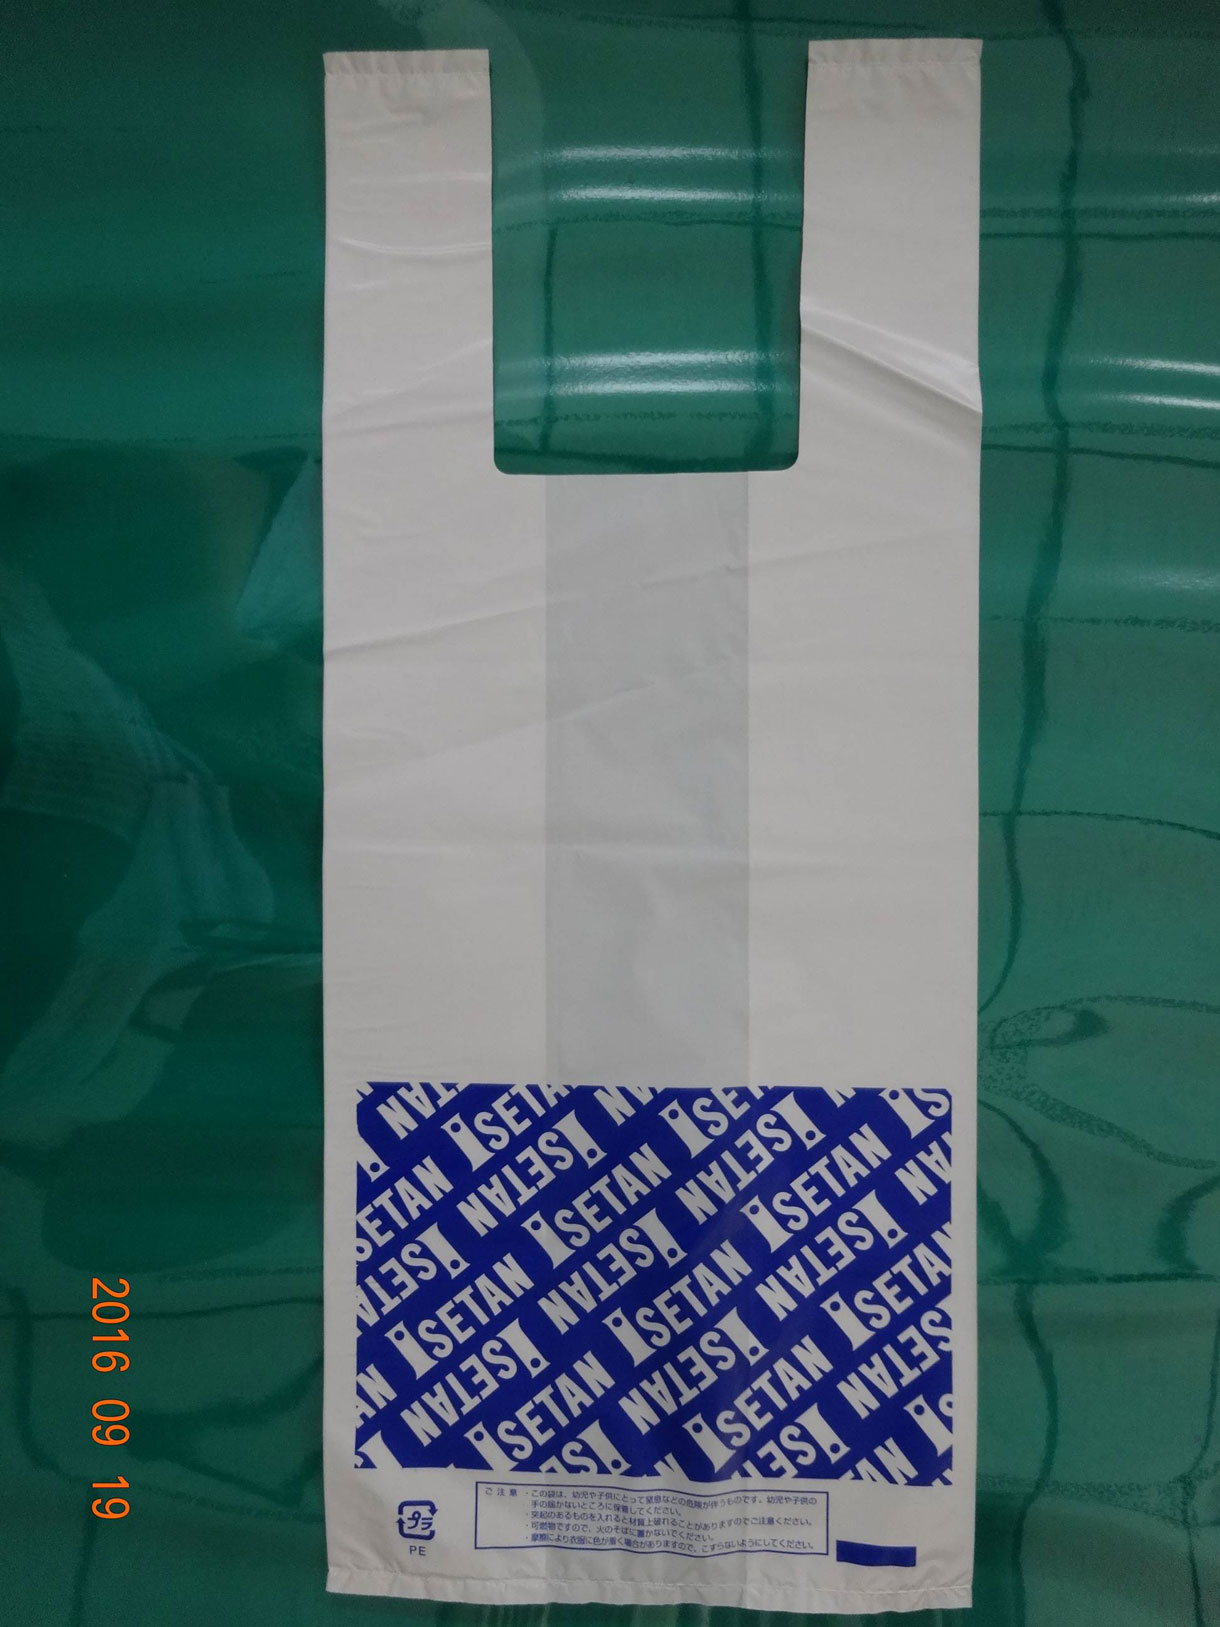 江苏多多塑胶工业有限公司-中国国际包装展-中国包装容器展